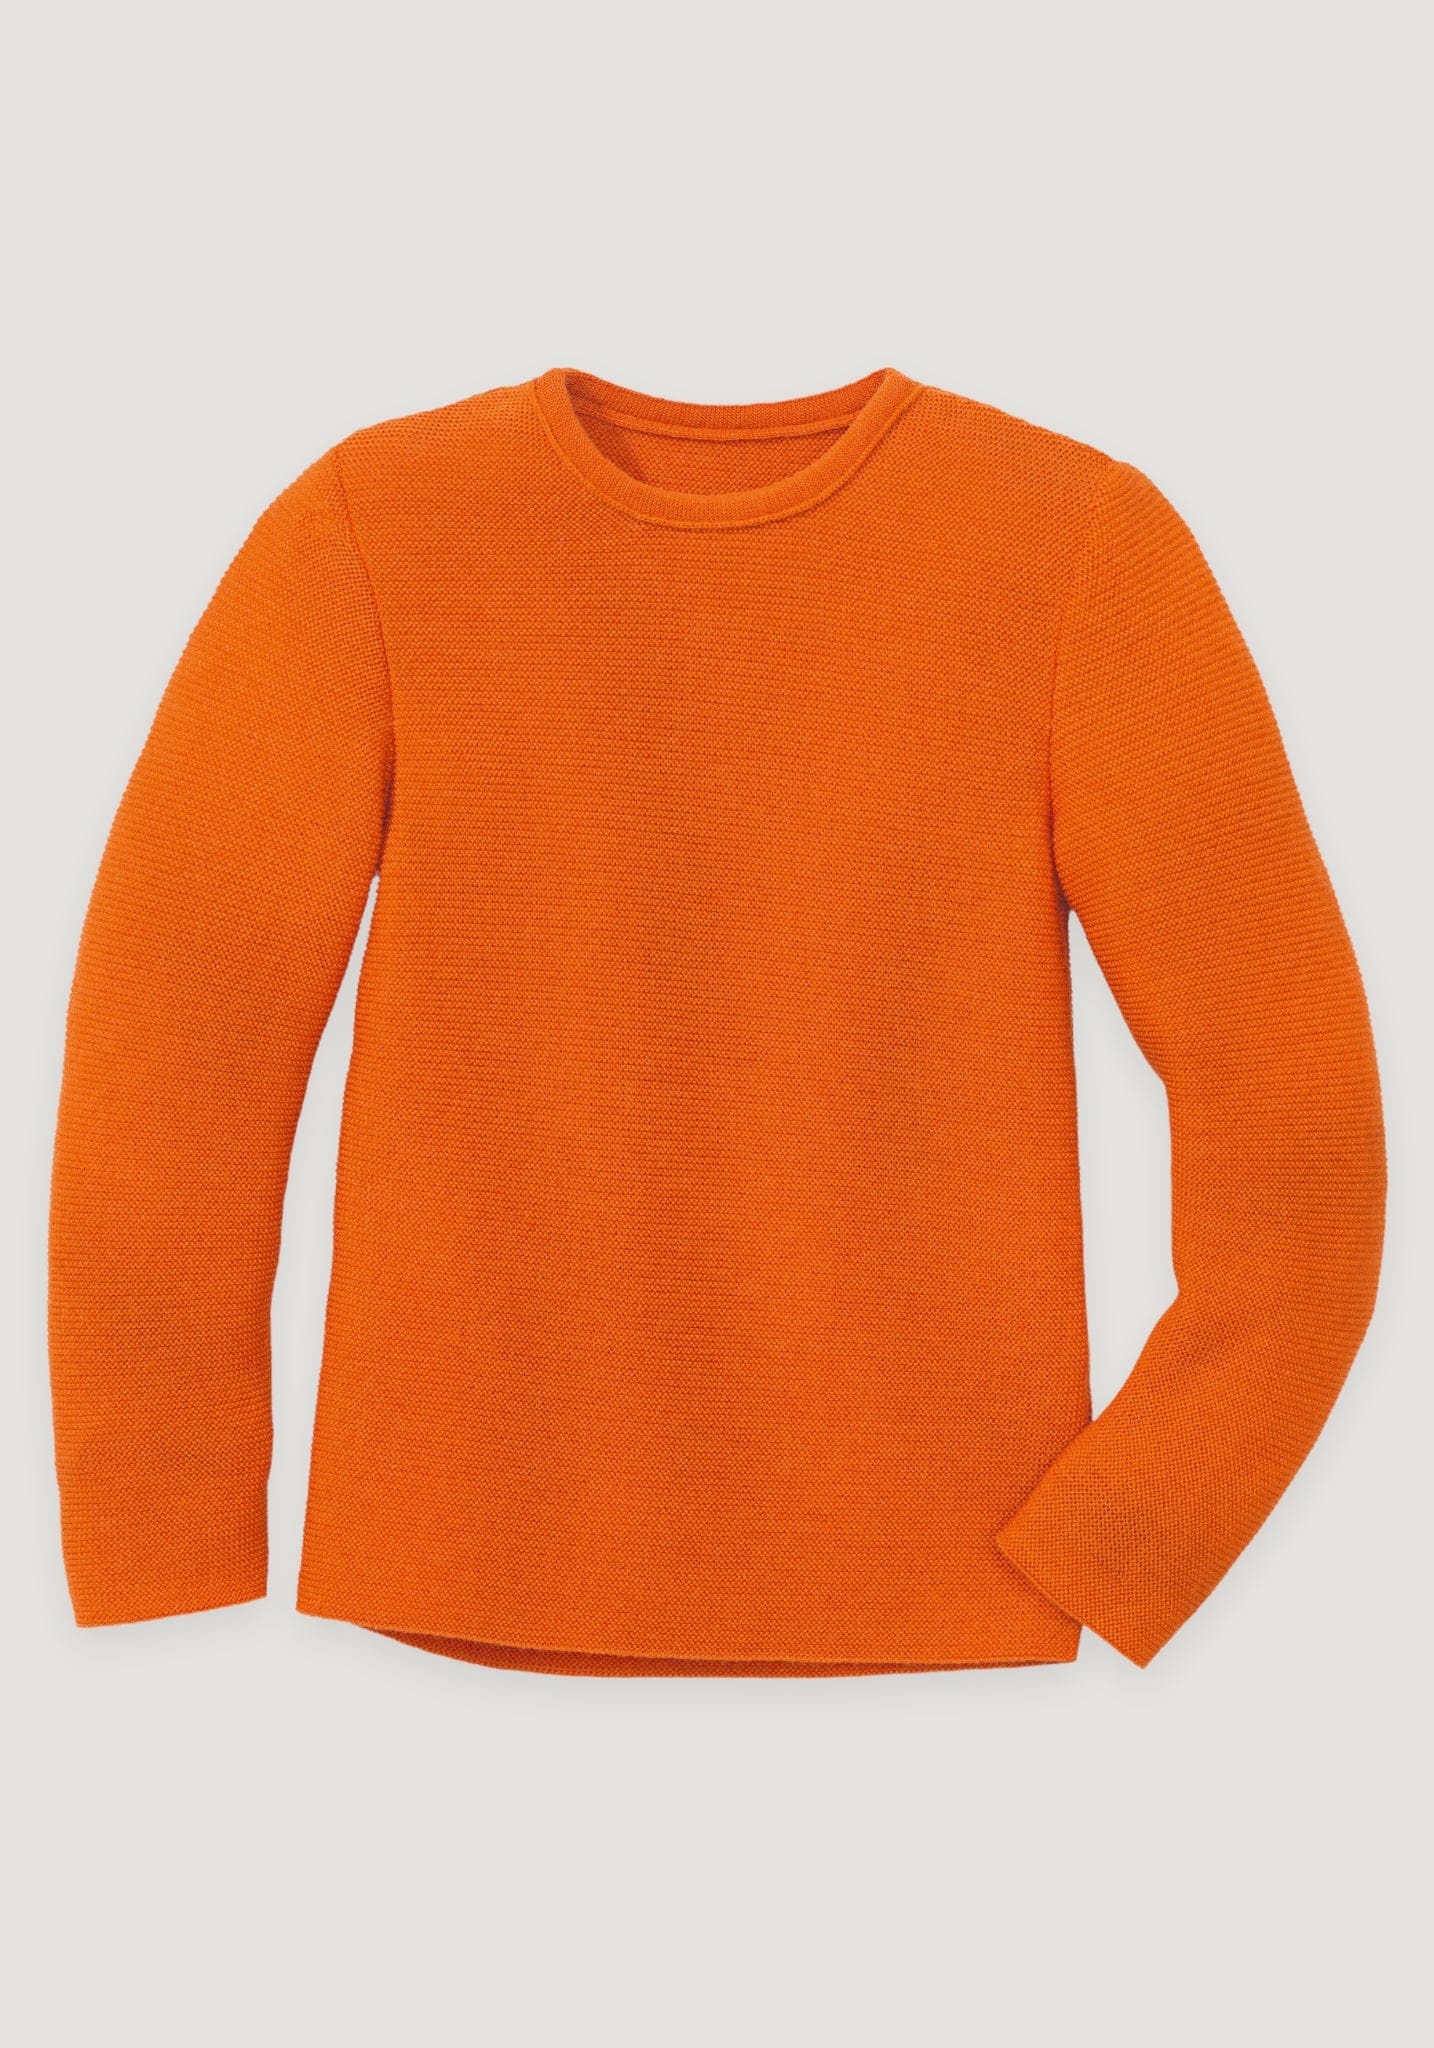 Pulover purl knit din lână merinos - Orange Disana HipHip.ro